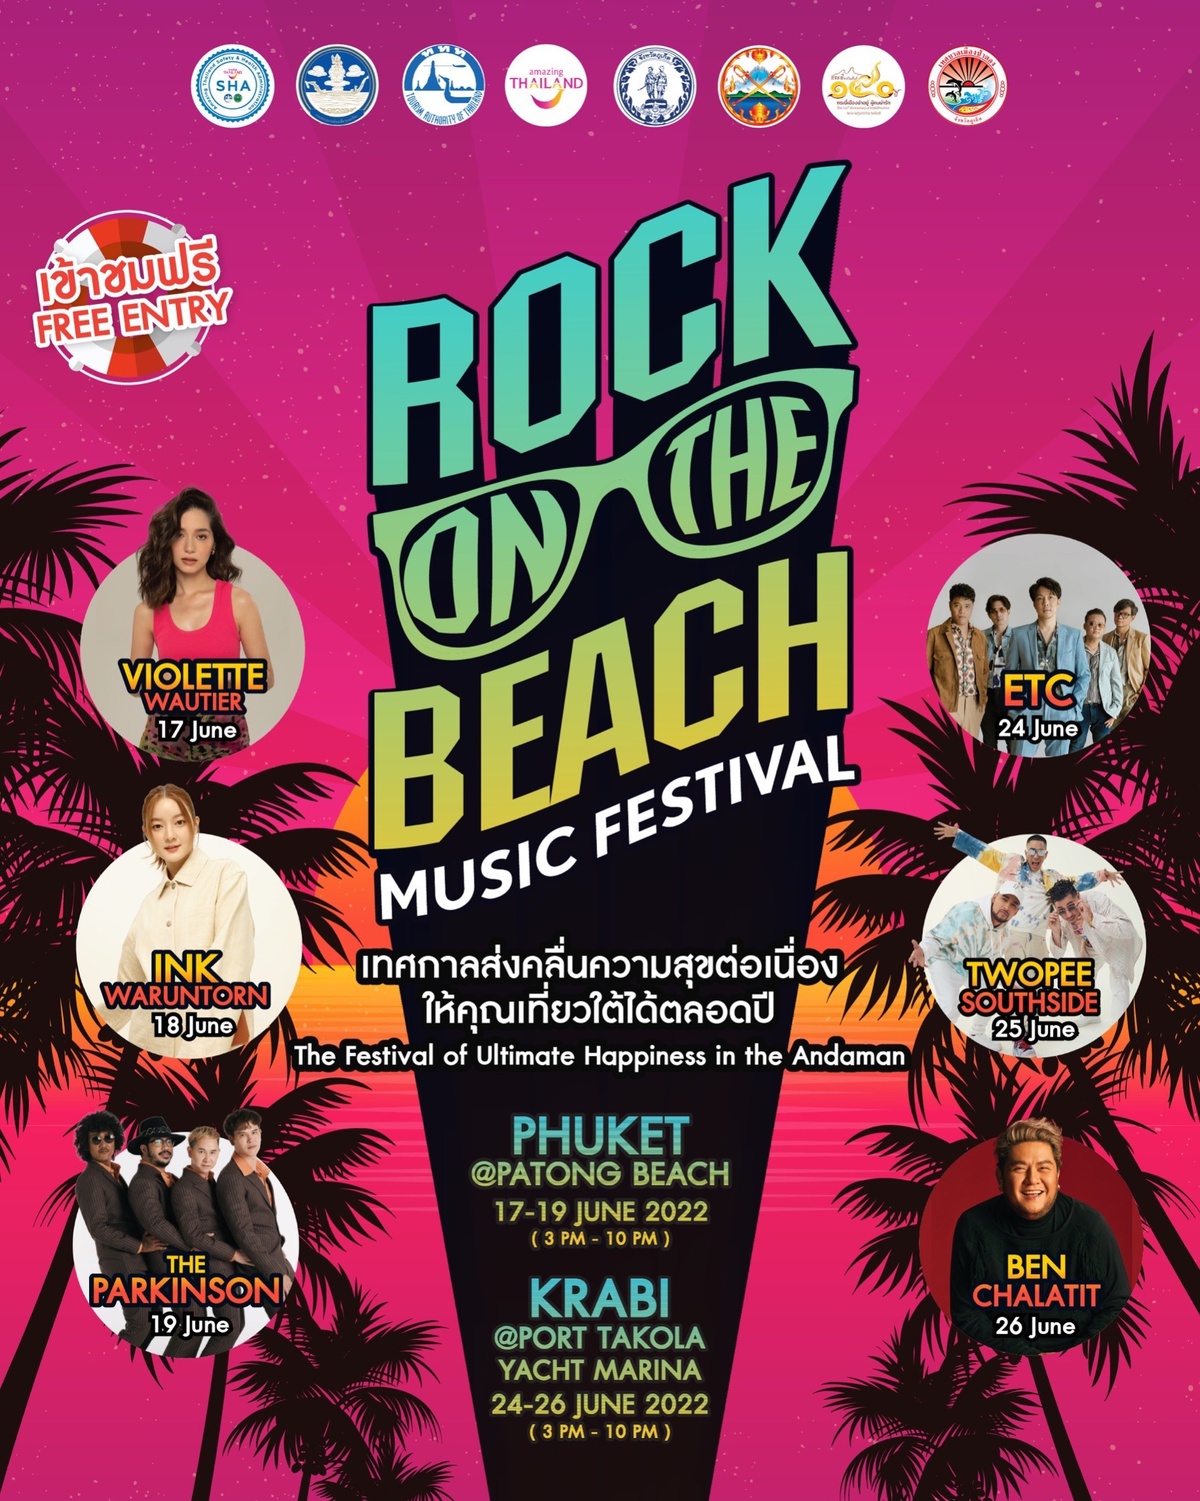 ททท. จัดยิ่งใหญ่ มหกรรมดนตรีบนชายหาด ROCK ON THE BEACH MUSIC FESTIVAL เทศกาลส่งคลื่นความสุขต่อเนื่อง ให้คุณเที่ยวใต้ได้ตลอดปี